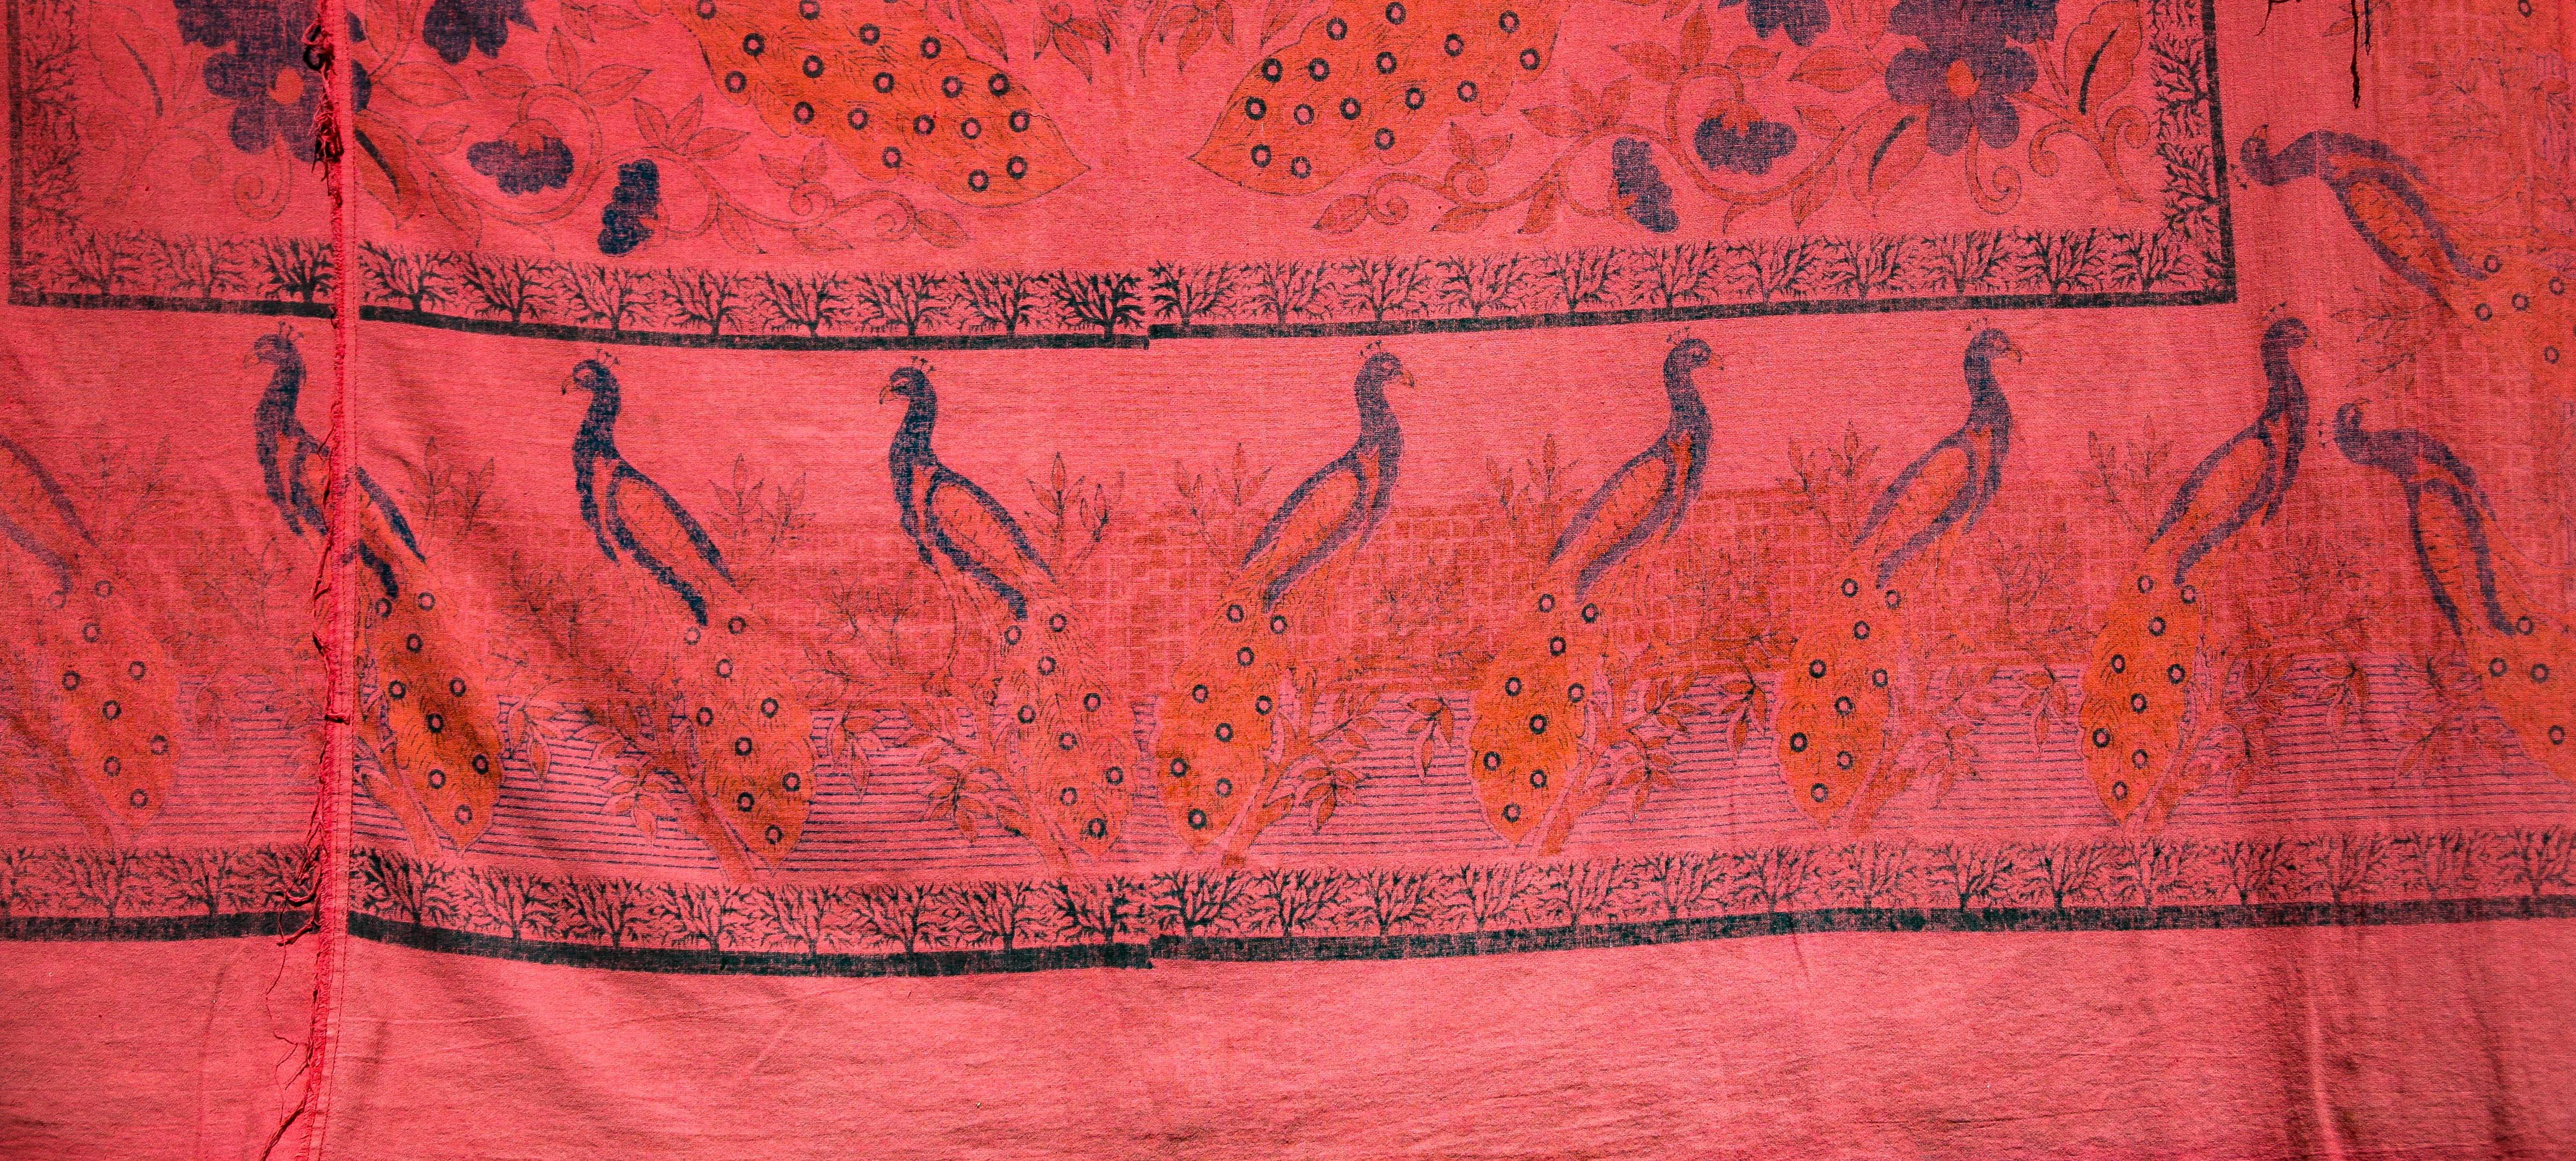 Bangladesh, Sylhet Prov, Fabric Detail, 2009, IMG 8191